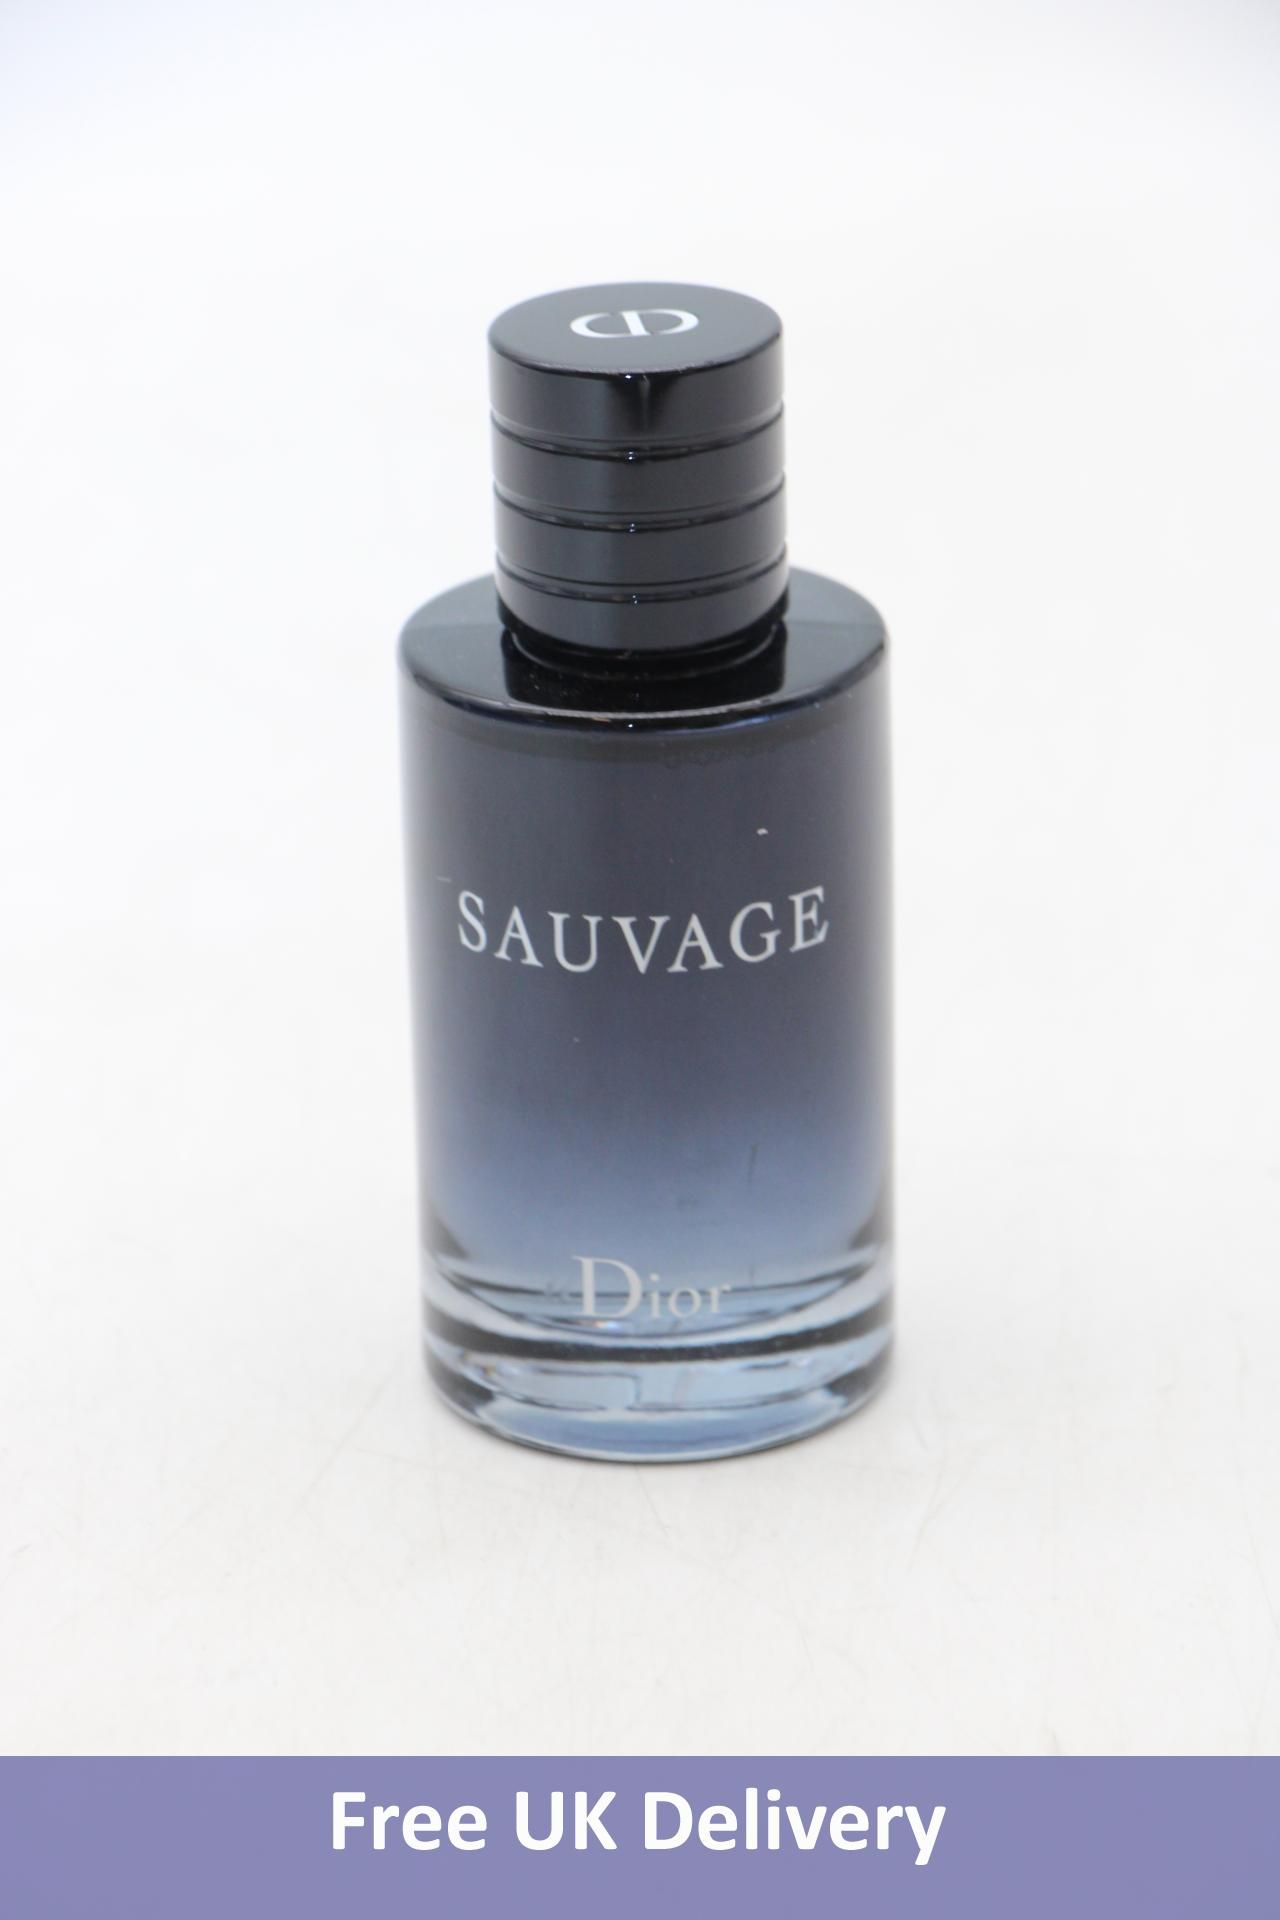 Sauvage Eau De Toilette Refillable, Black, Size 100ml, No box